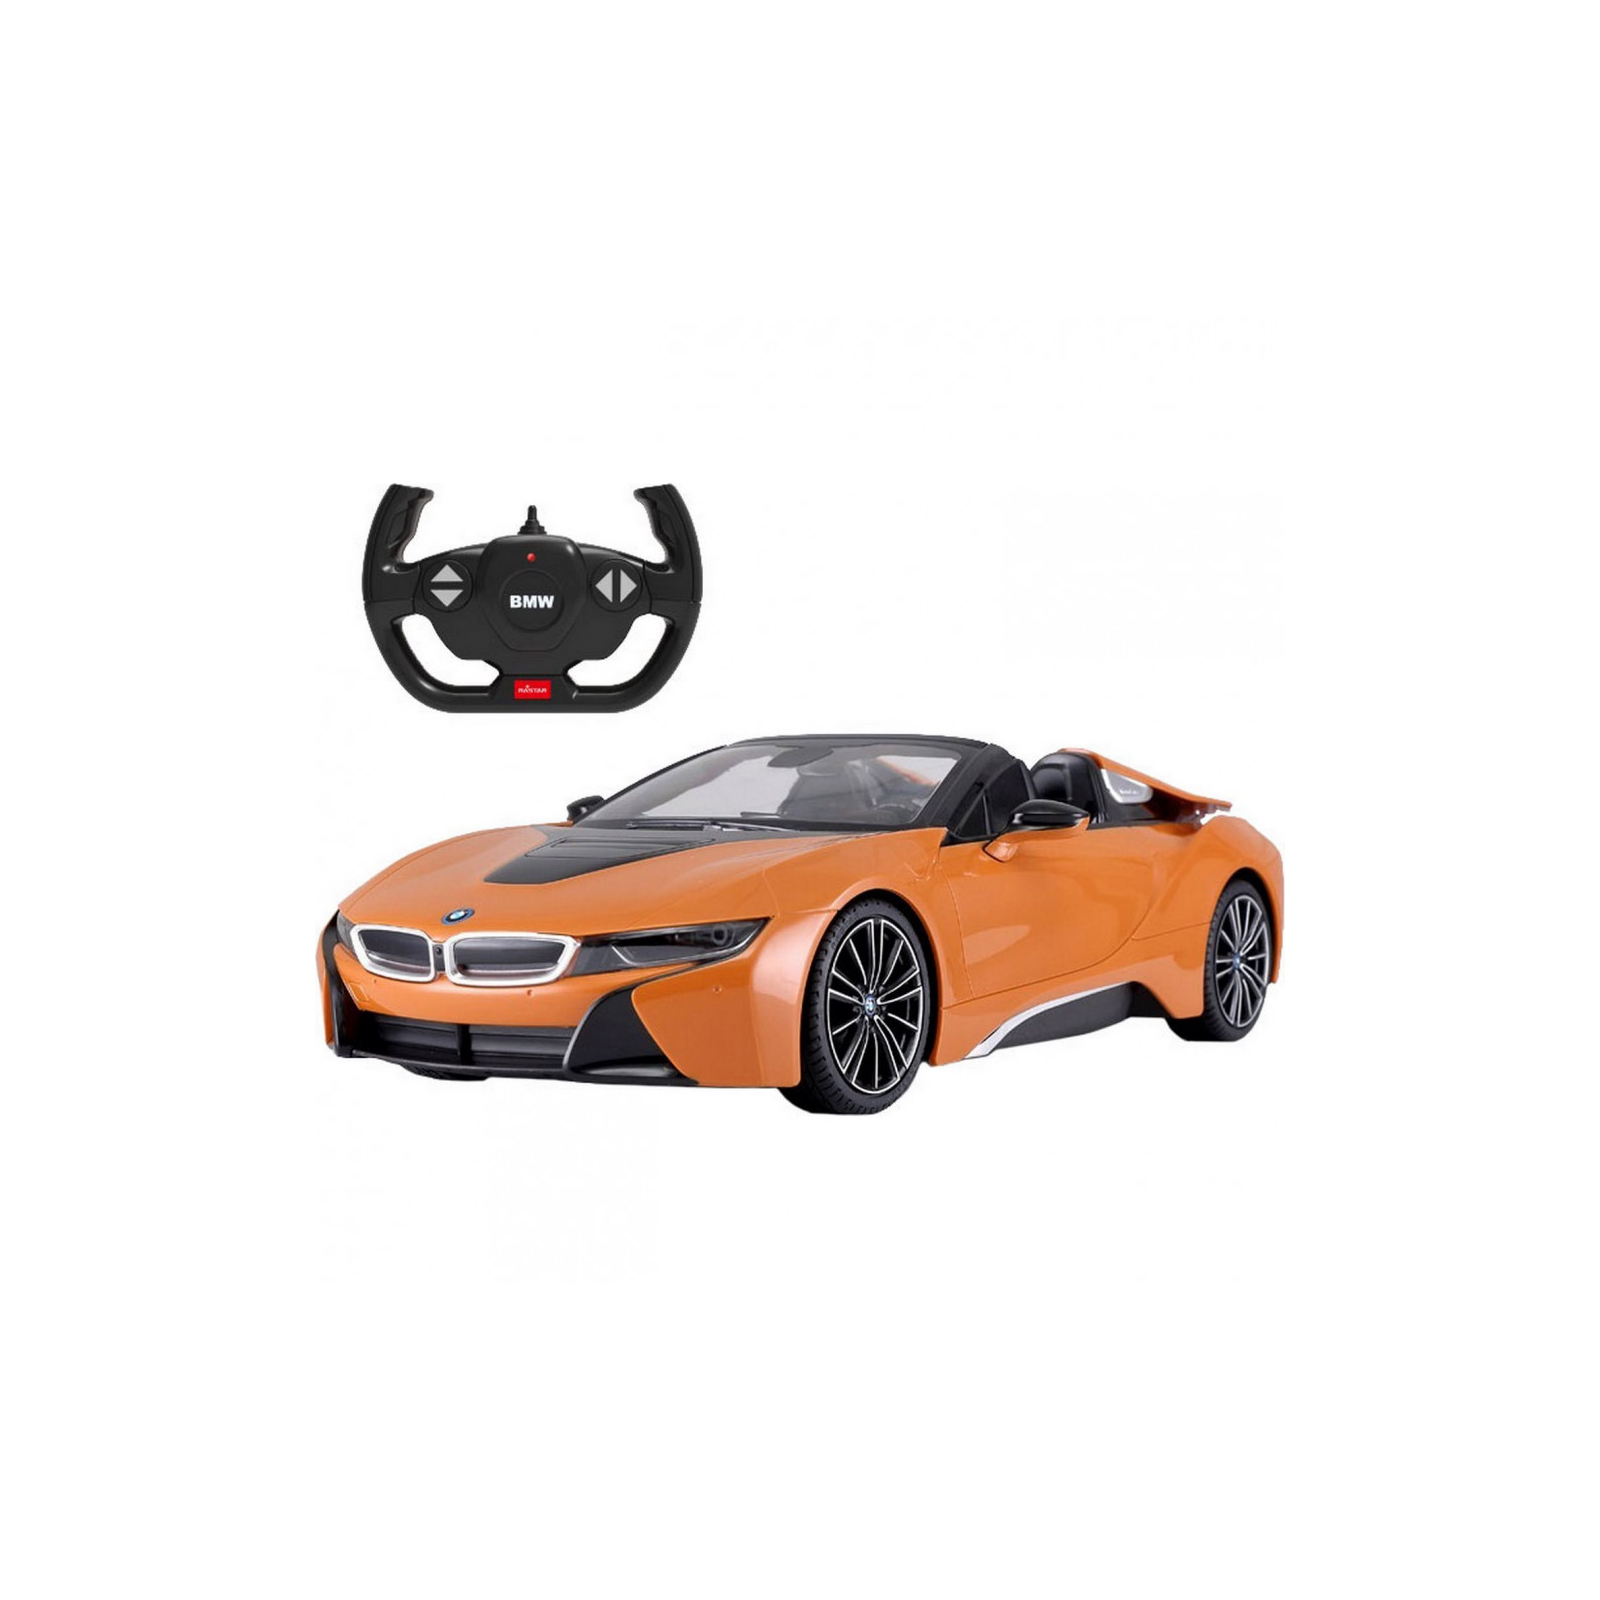 Радіокерована іграшка Rastar BMW i8 Roadster 114 (95560 orange)